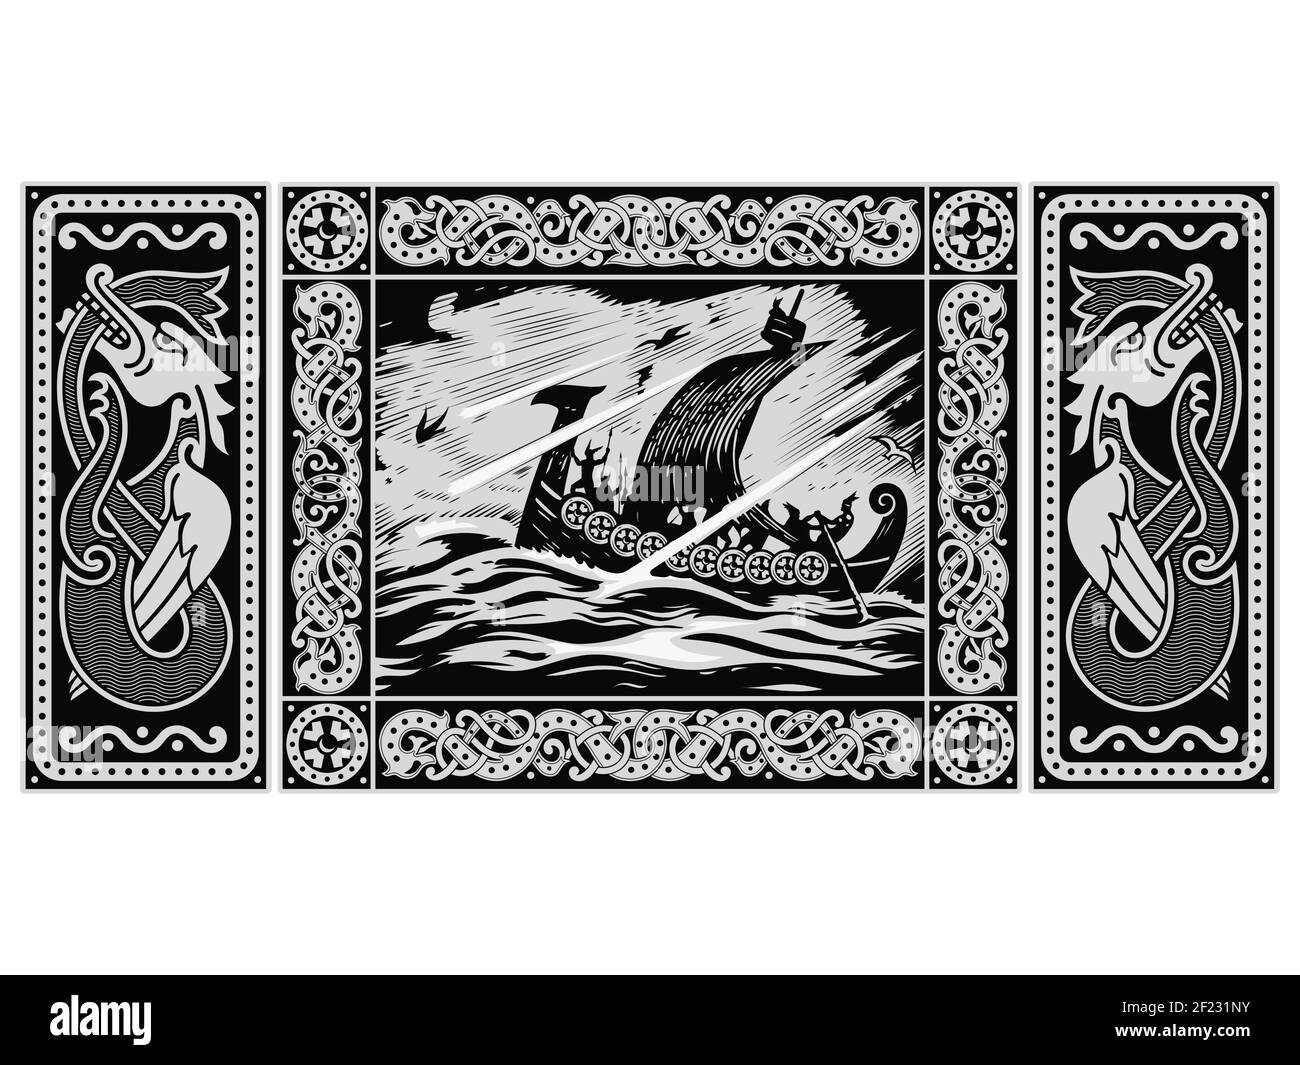 Vecchio design scandinavo. Norse Warrior Berserker, Viking Ship Drakkar e il drago alato Illustrazione Vettoriale